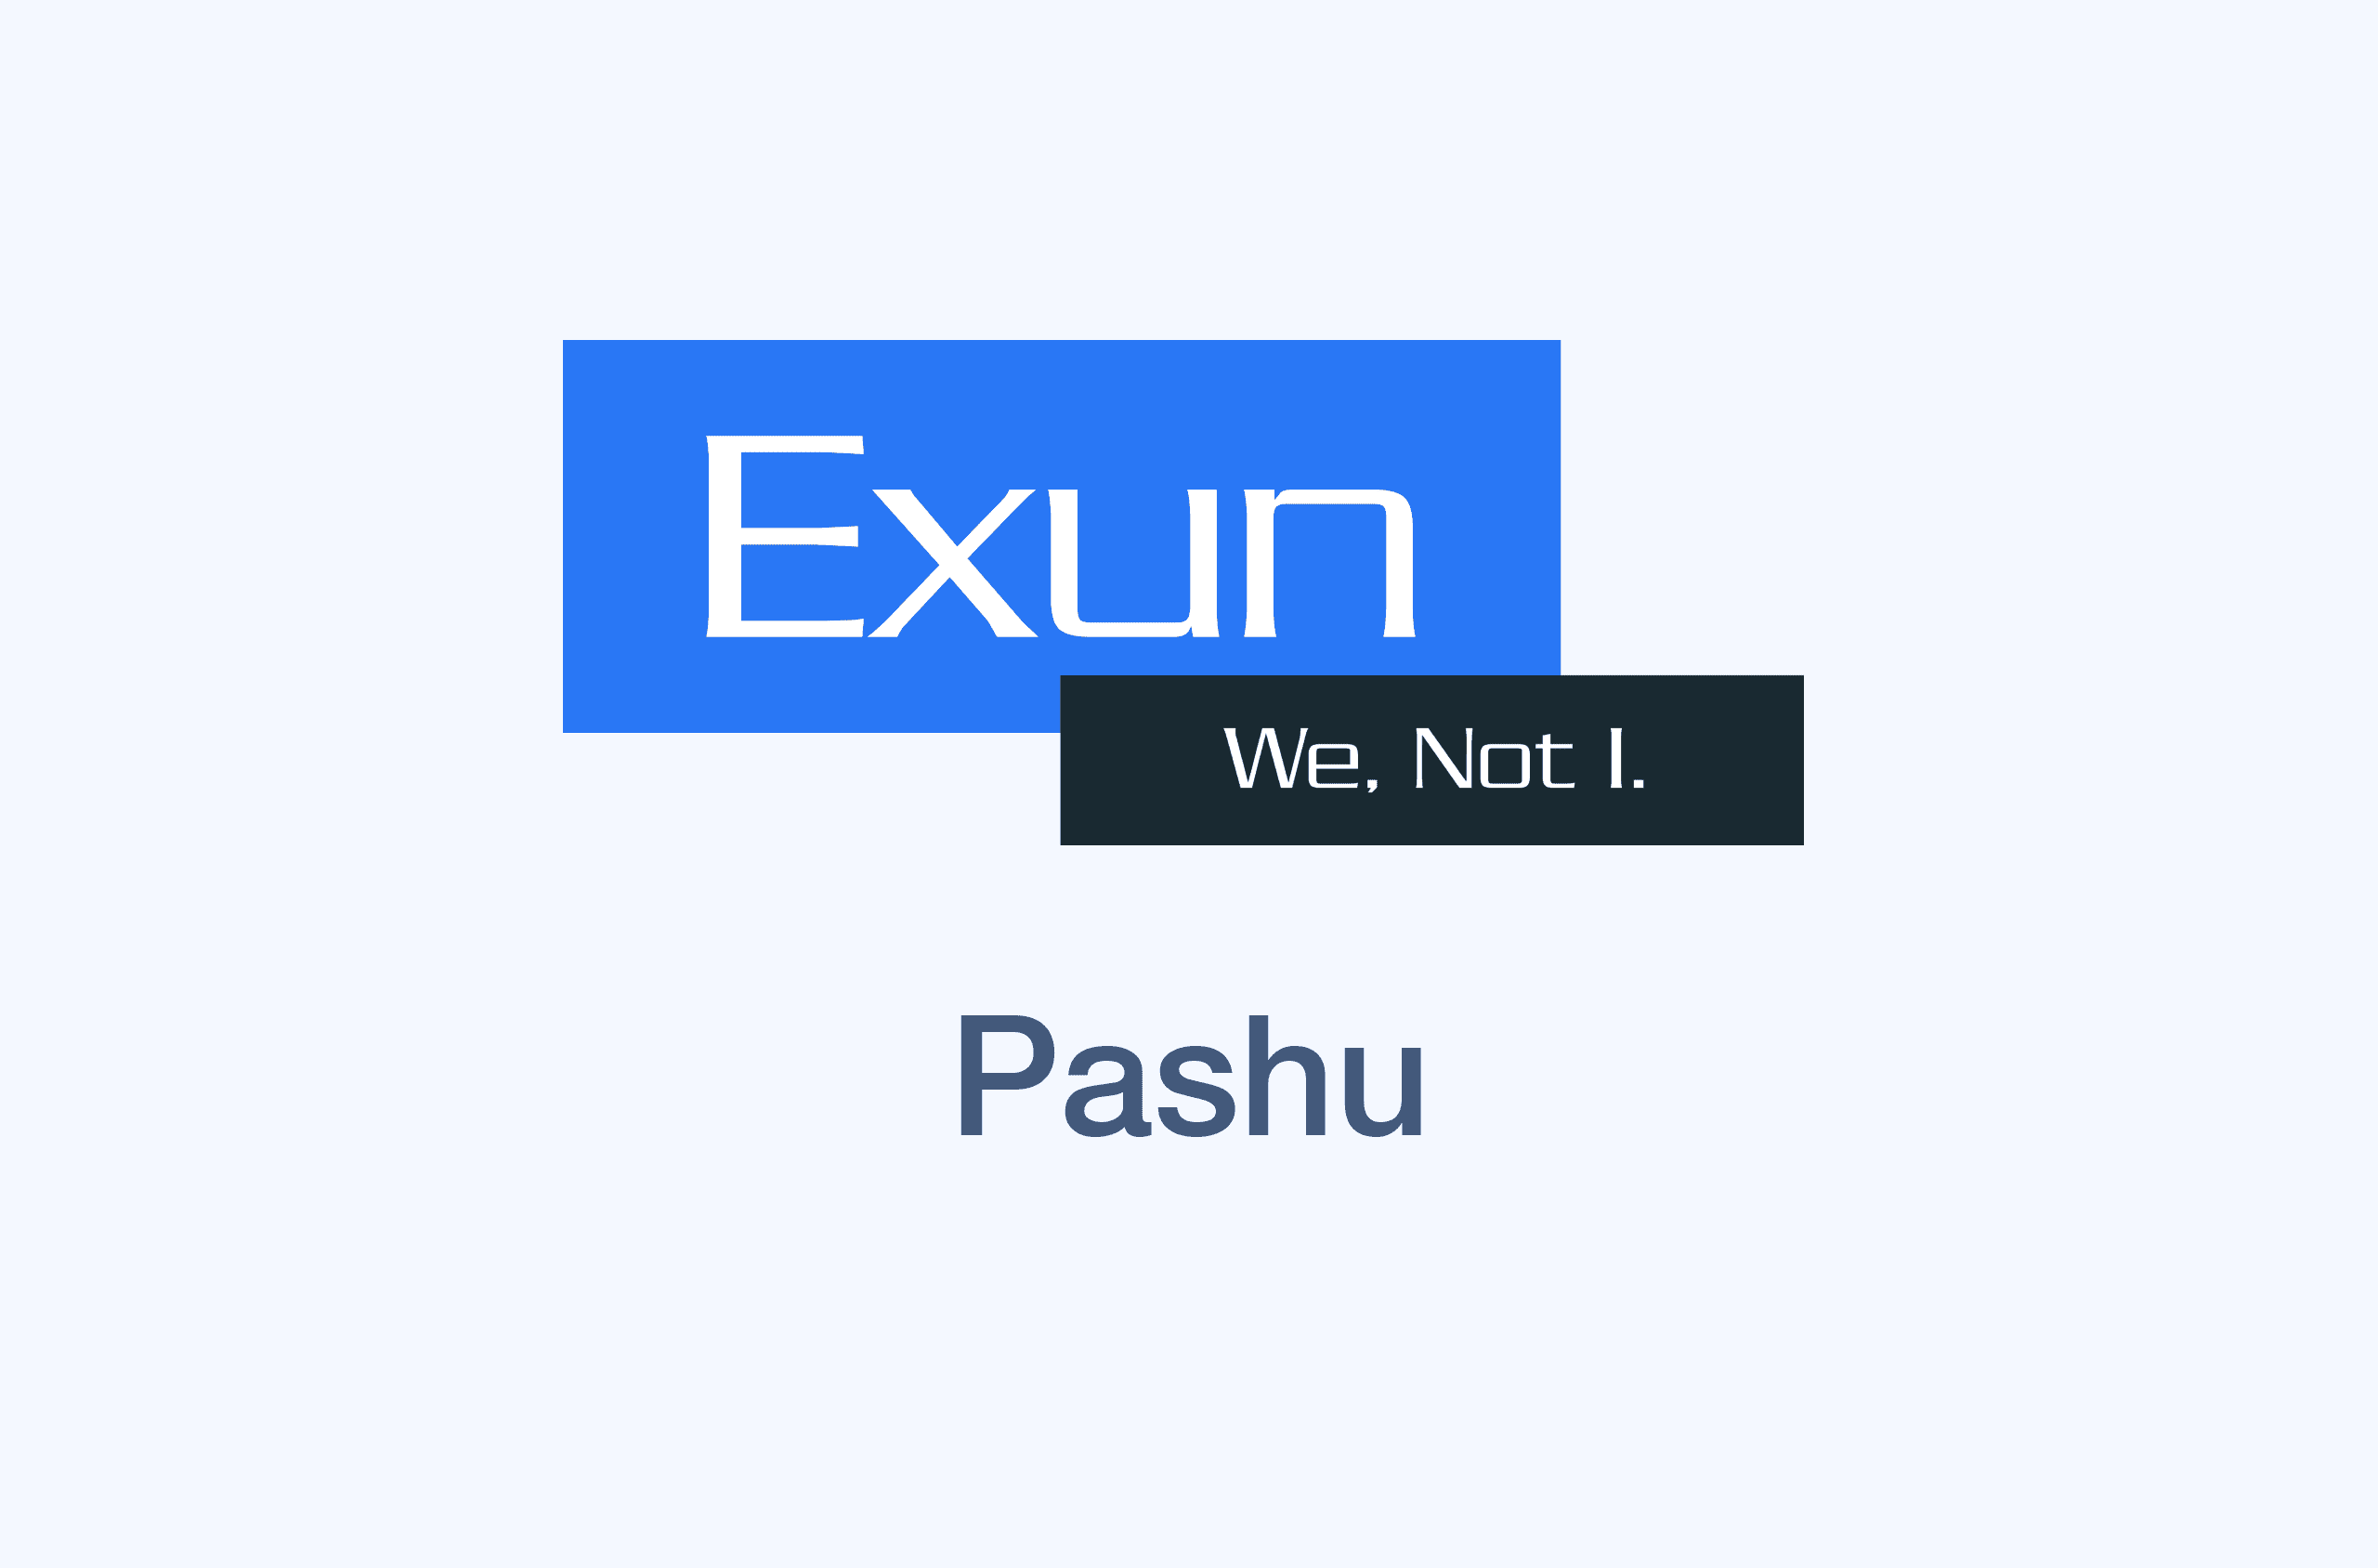 Pashu's image